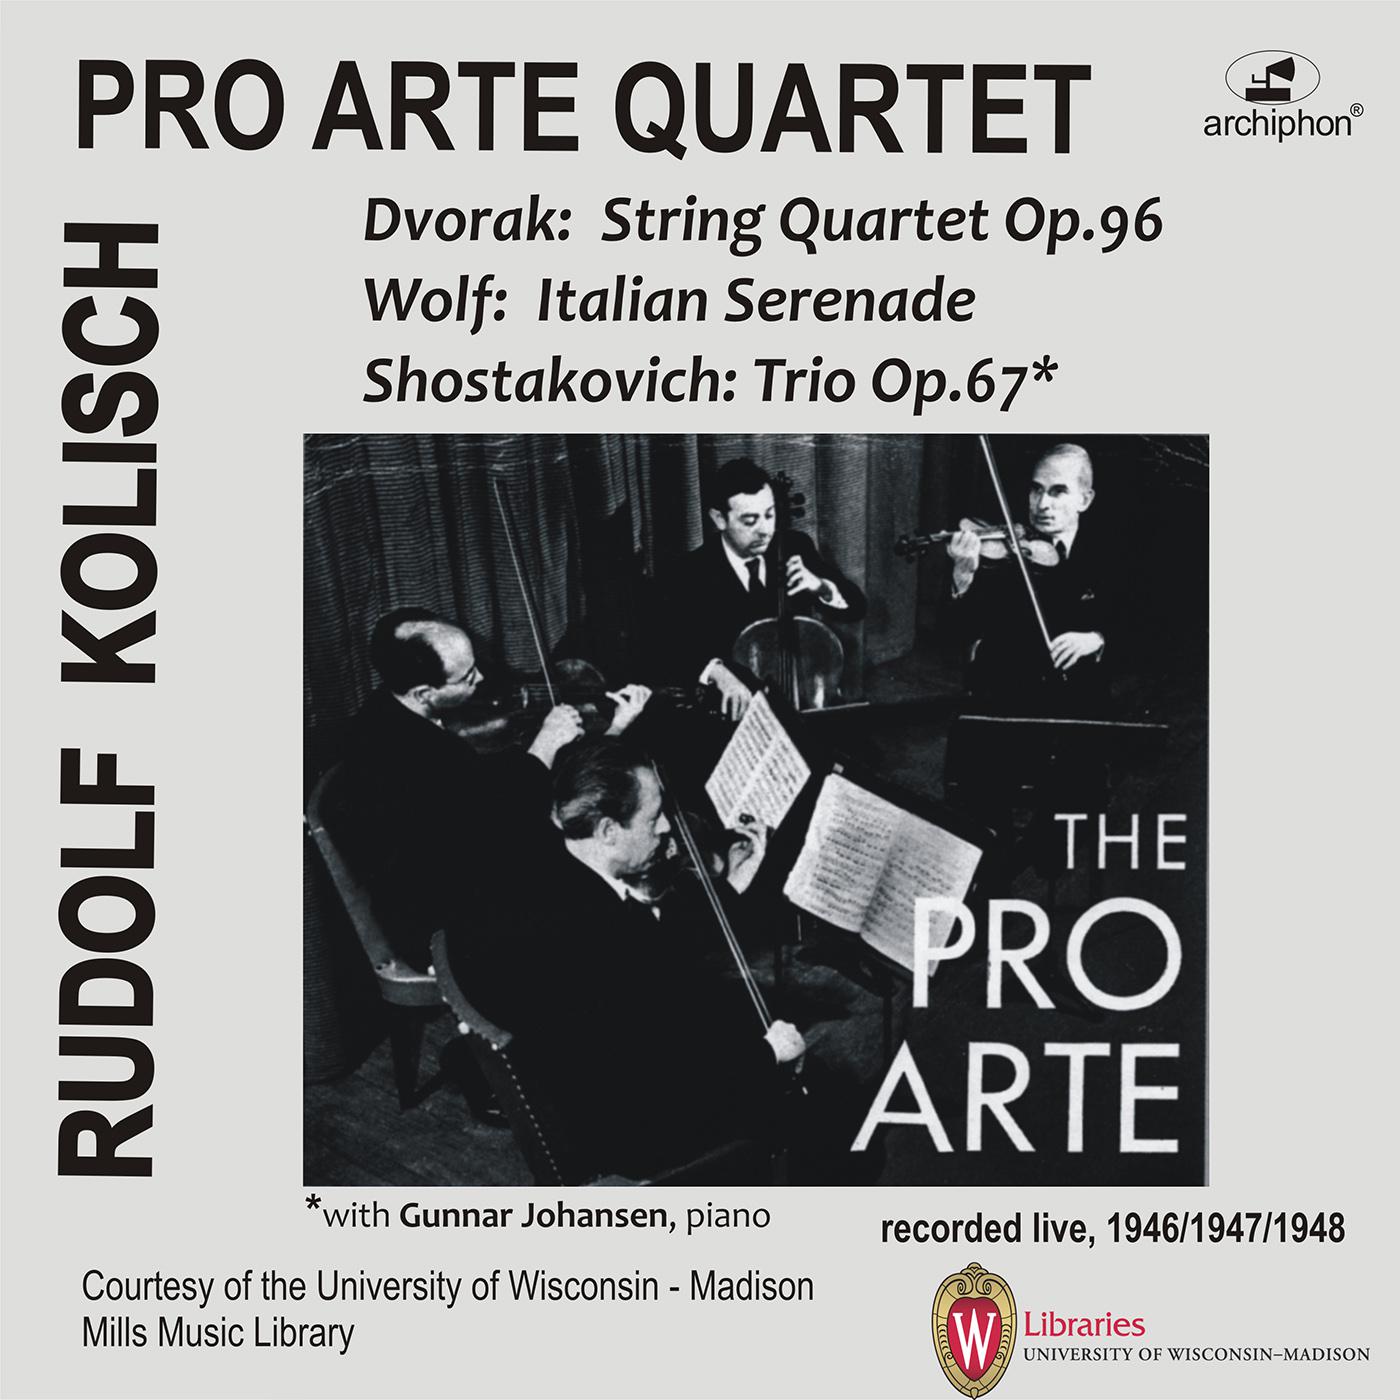 Rudolf Kolisch - Piano Trio No. 2 in E Minor, Op. 67:(radio announcement)